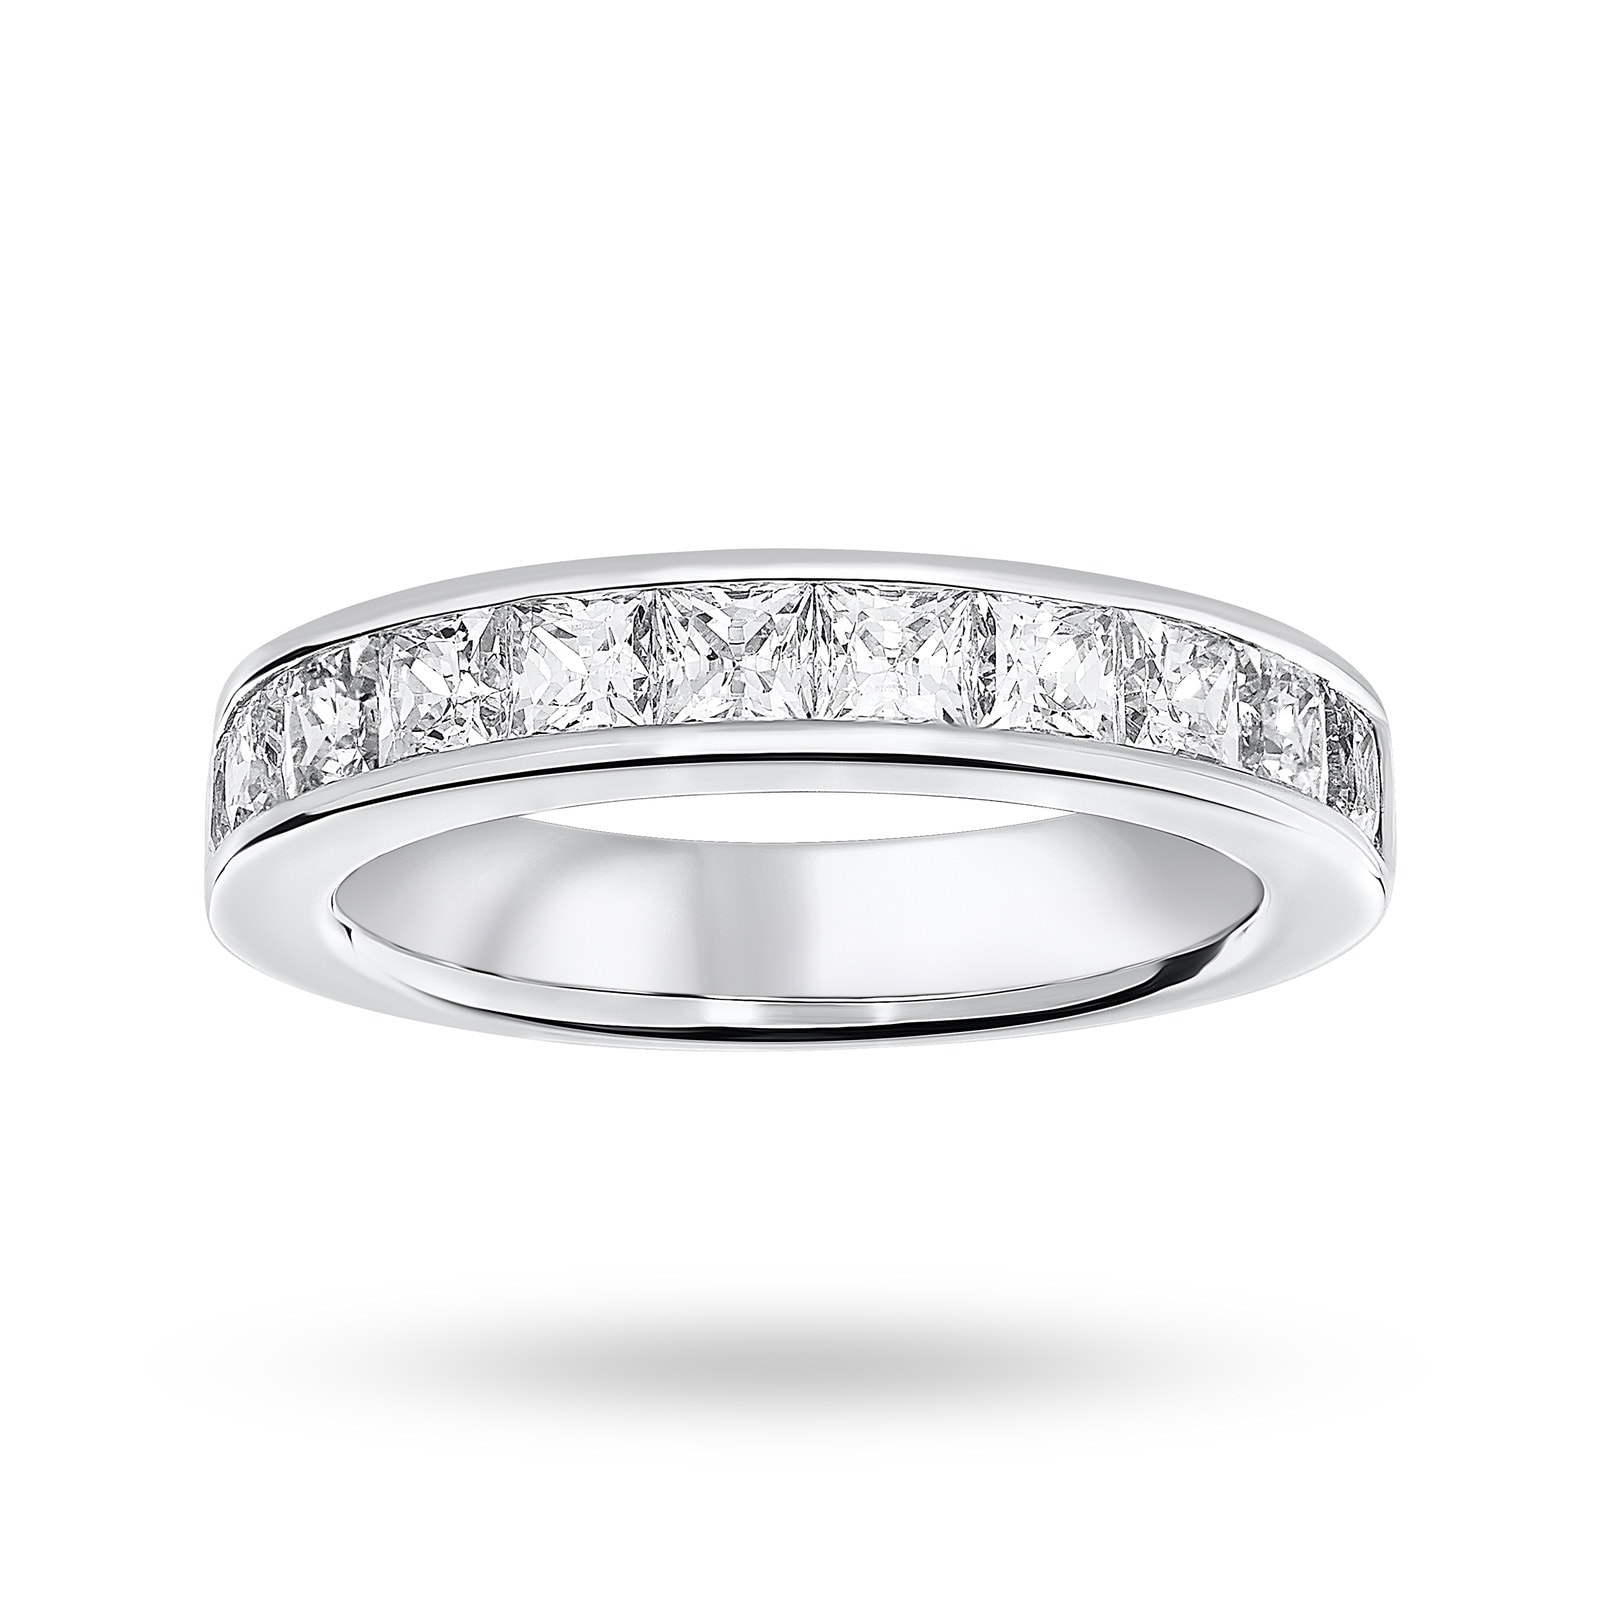 18 Carat White Gold 2.00 Carat Princess Cut Half Eternity Ring - Ring Size J